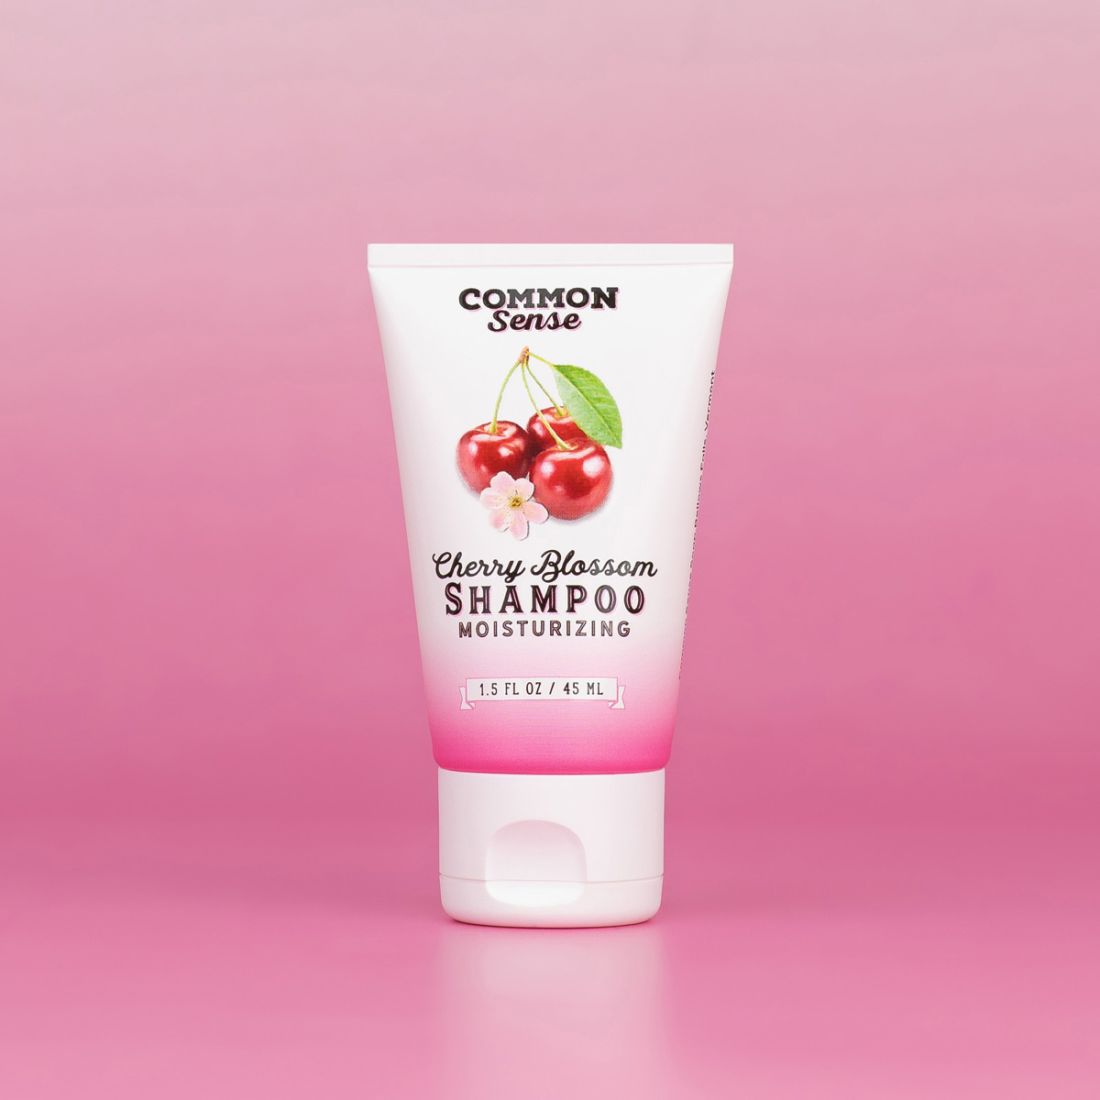 Cherry Blossom Shampoo Sample